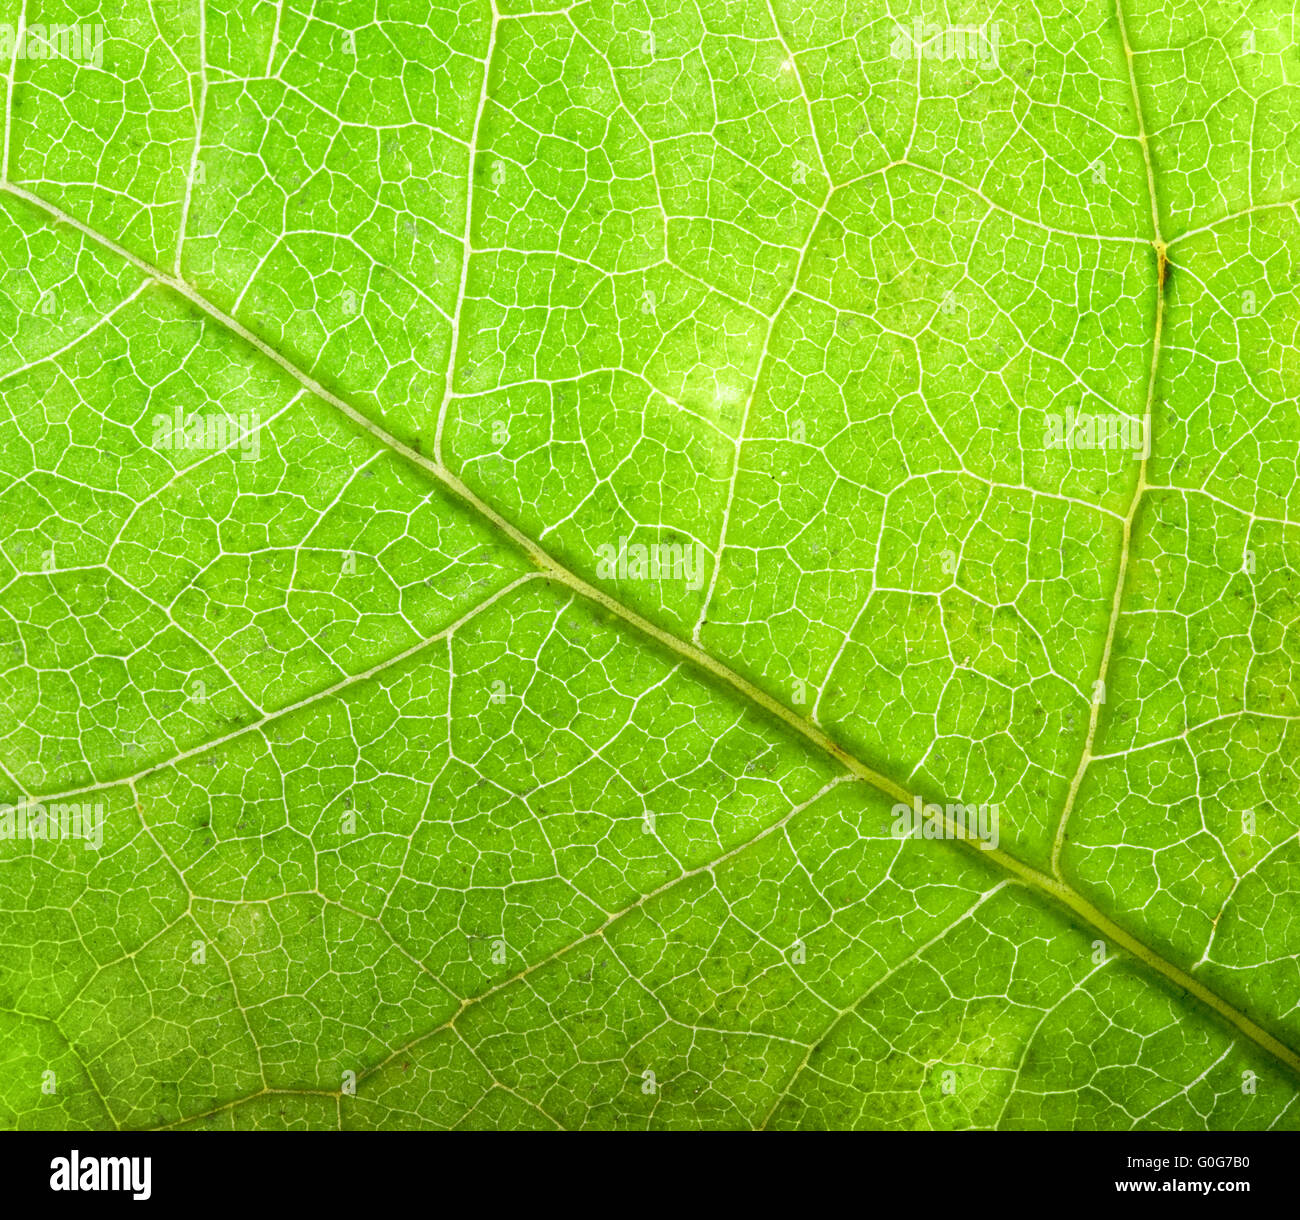 Grünes Blatt Nahaufnahme Hintergrund. Natürliche Struktur der Venen Stockfoto